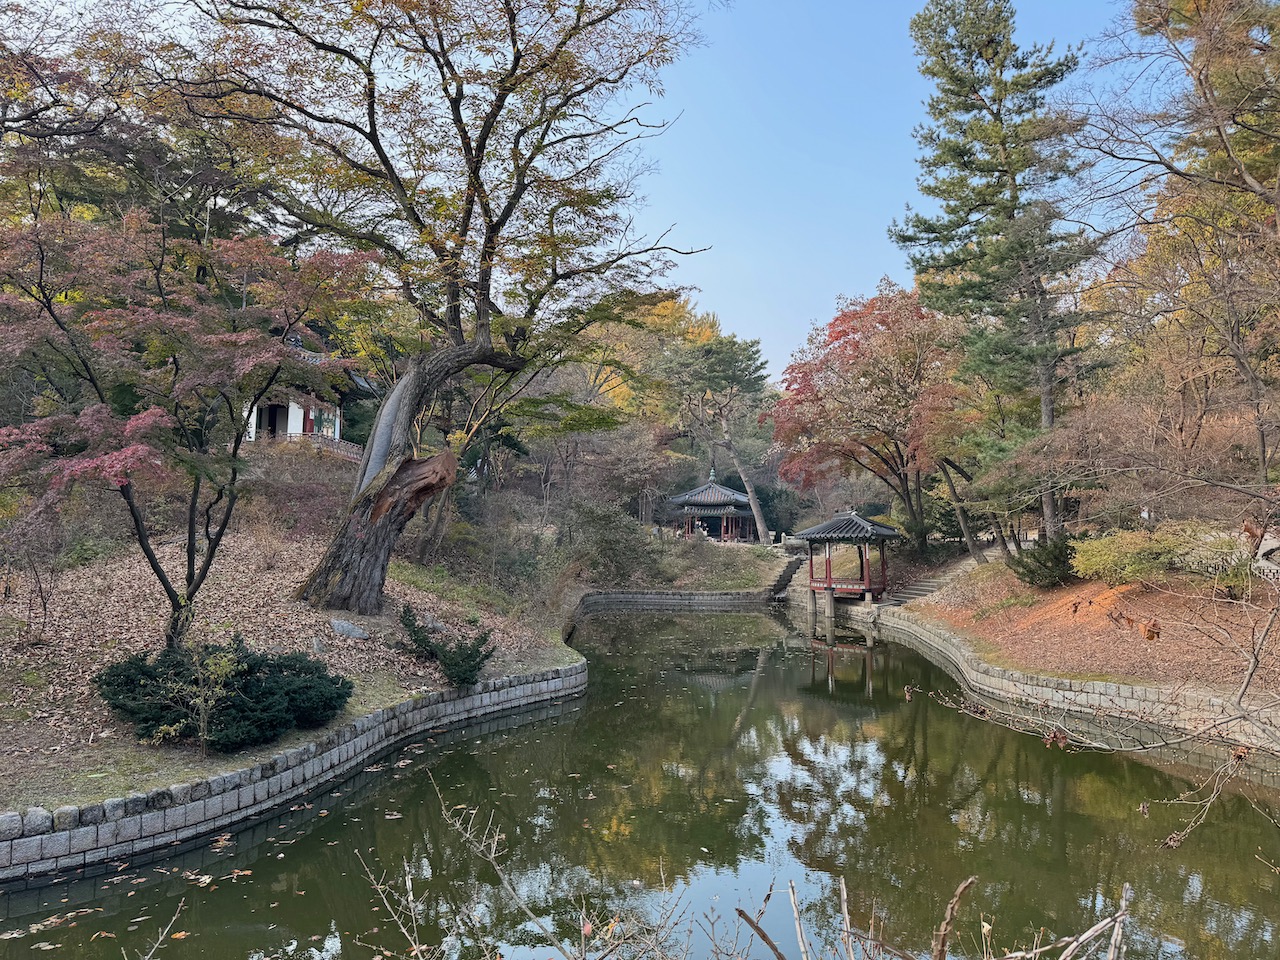 Inside the secret garden of Changdeokgung